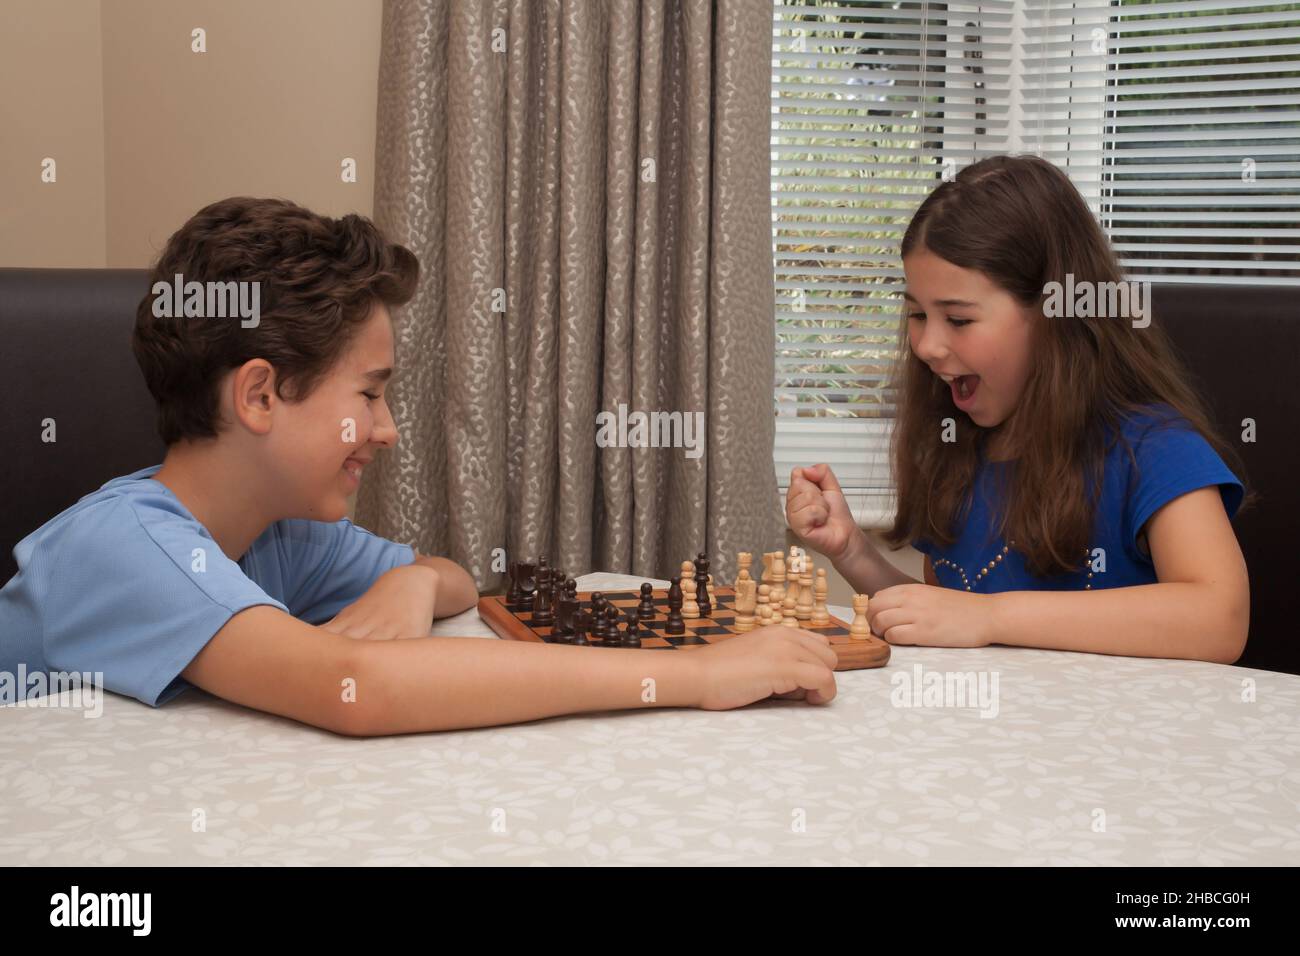 Un frère et une sœur jouant ensemble une partie d'échecs Banque D'Images